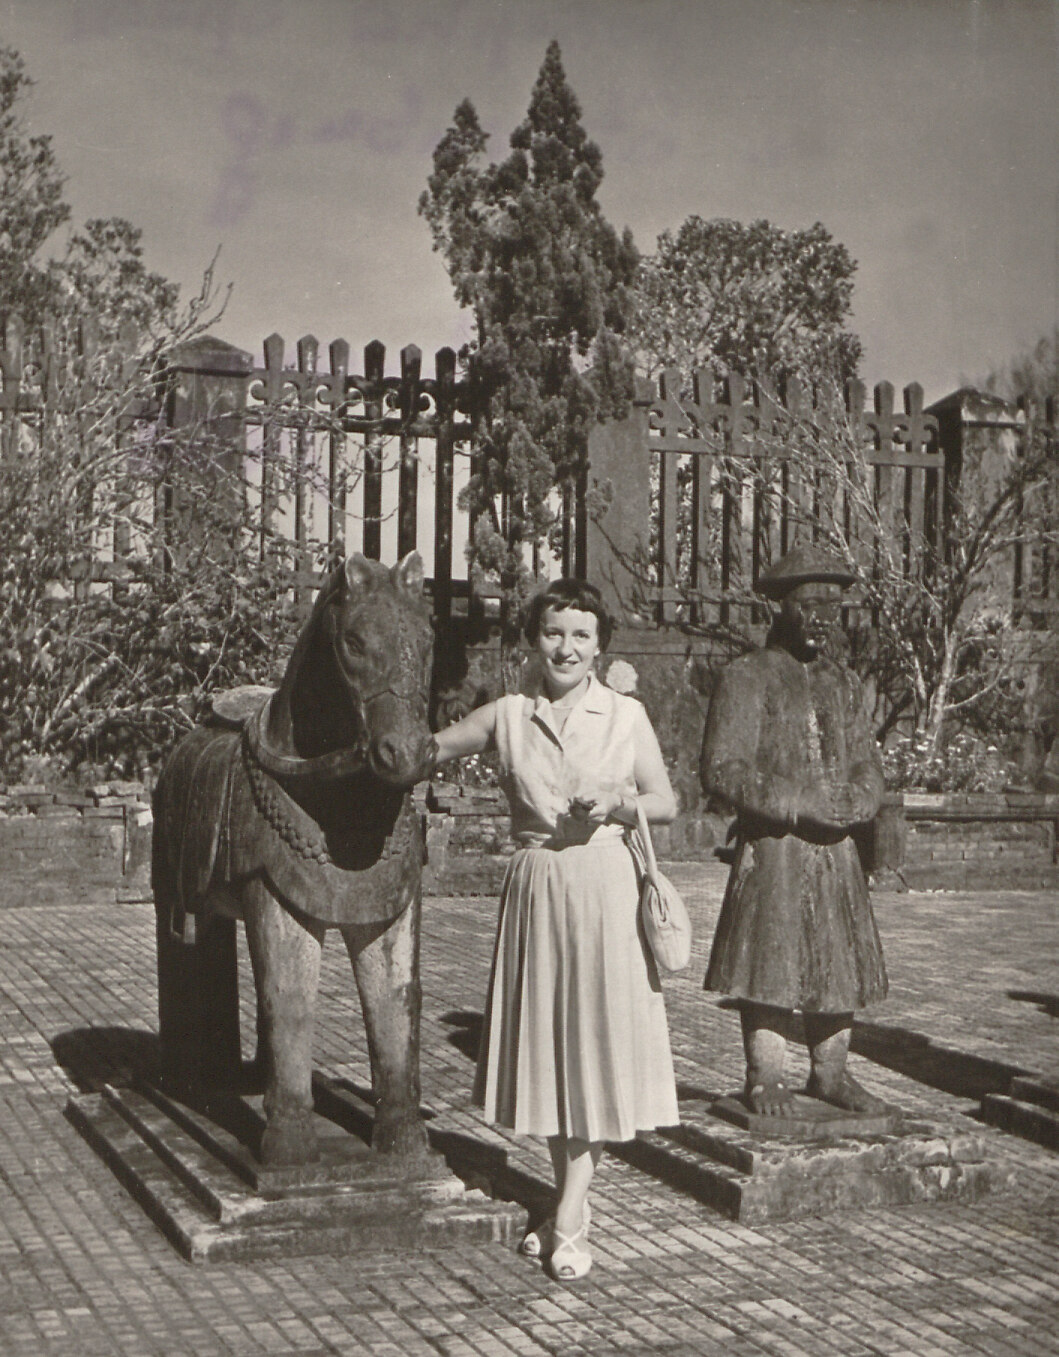 Anna-Josepha Speck von Sternburg in Hué, Vietnam, 1958